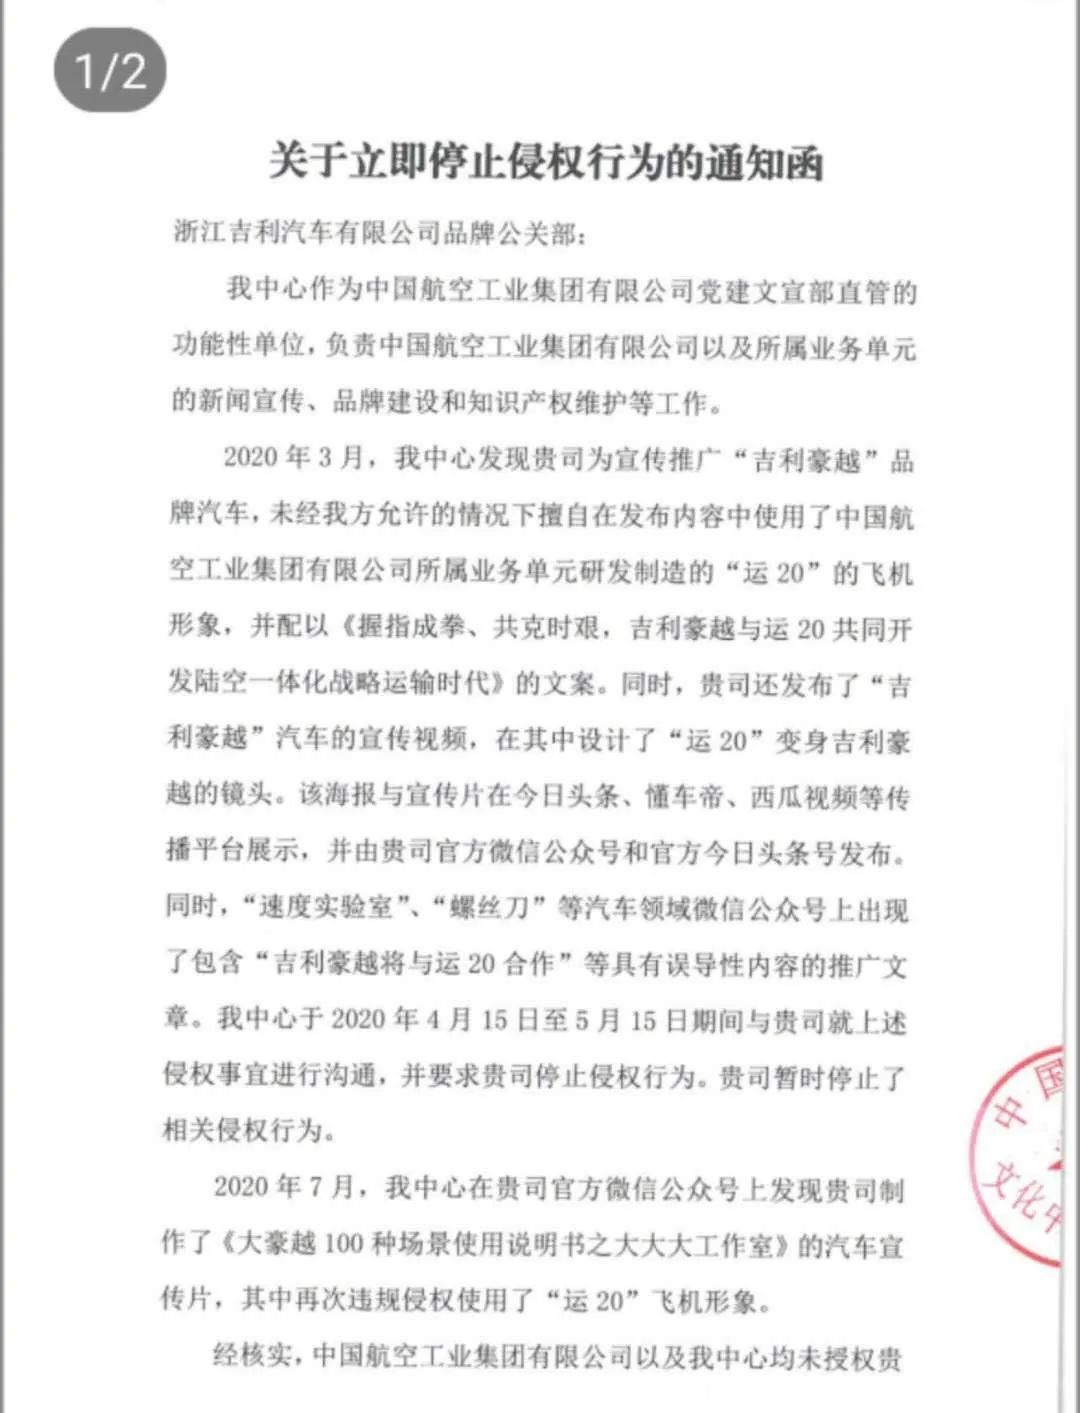 进行虚假宣传 中国航空工业要求吉利汽车立即停止侵权行为